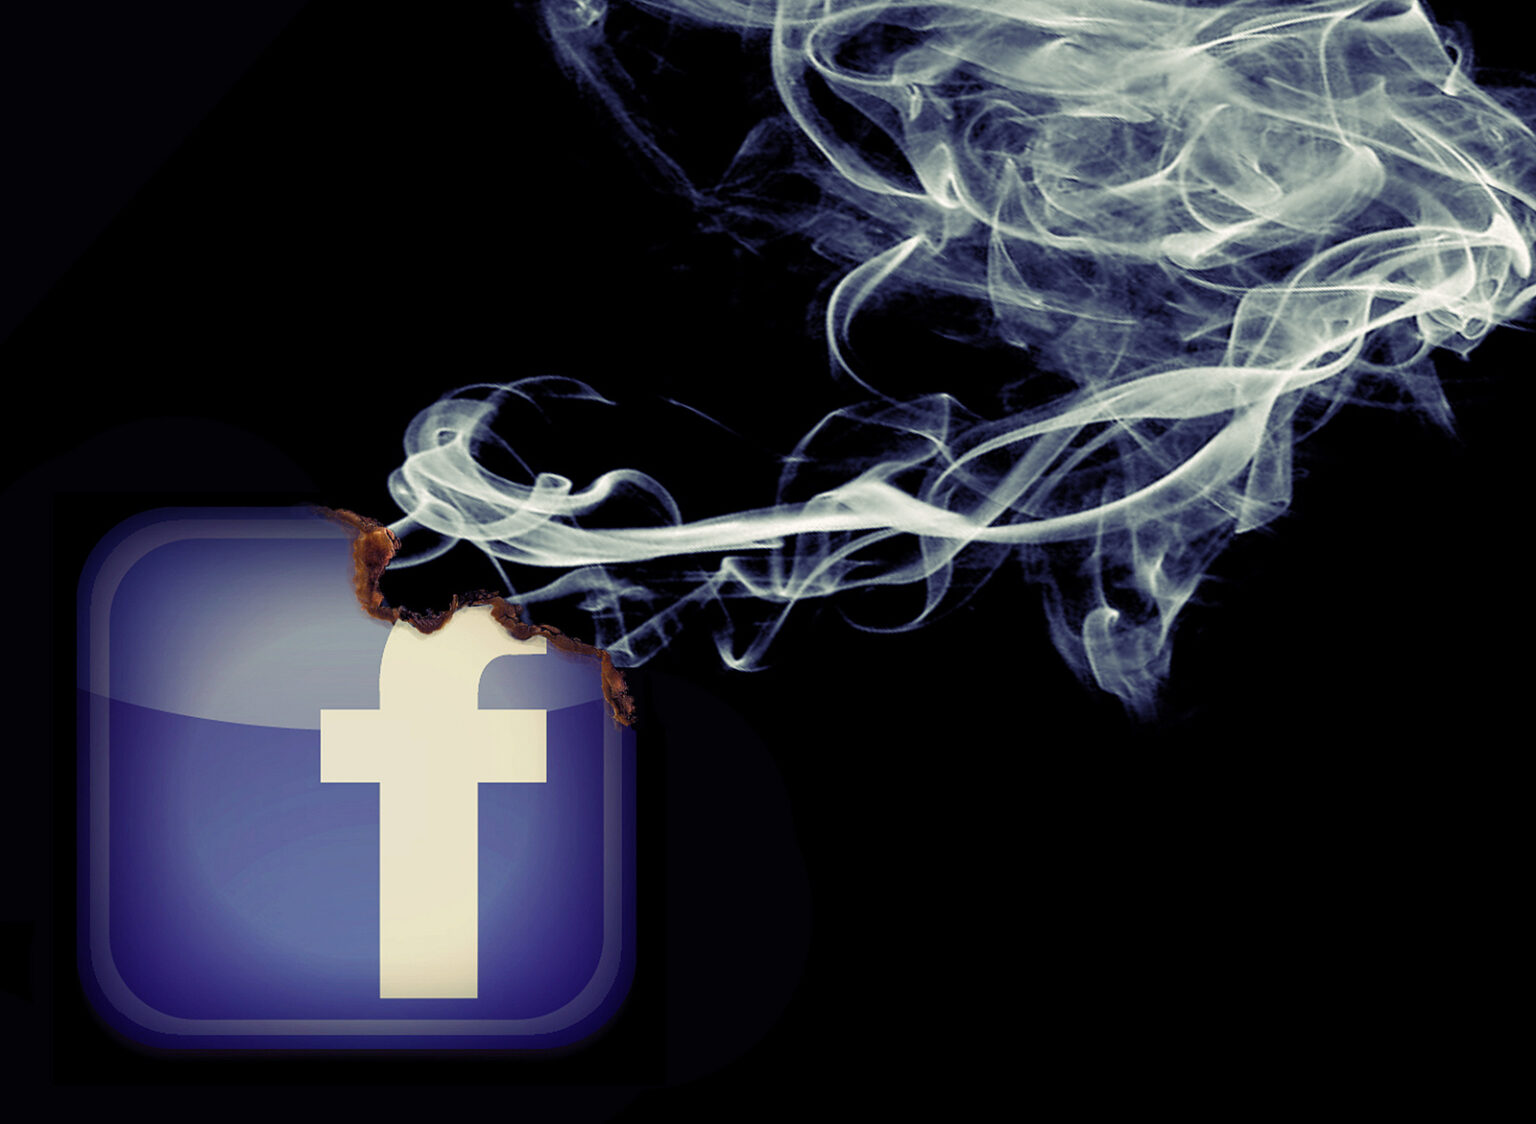 Facebooku výzvy na popravy muslimov nevadia. Niektoré už viedli k útokom